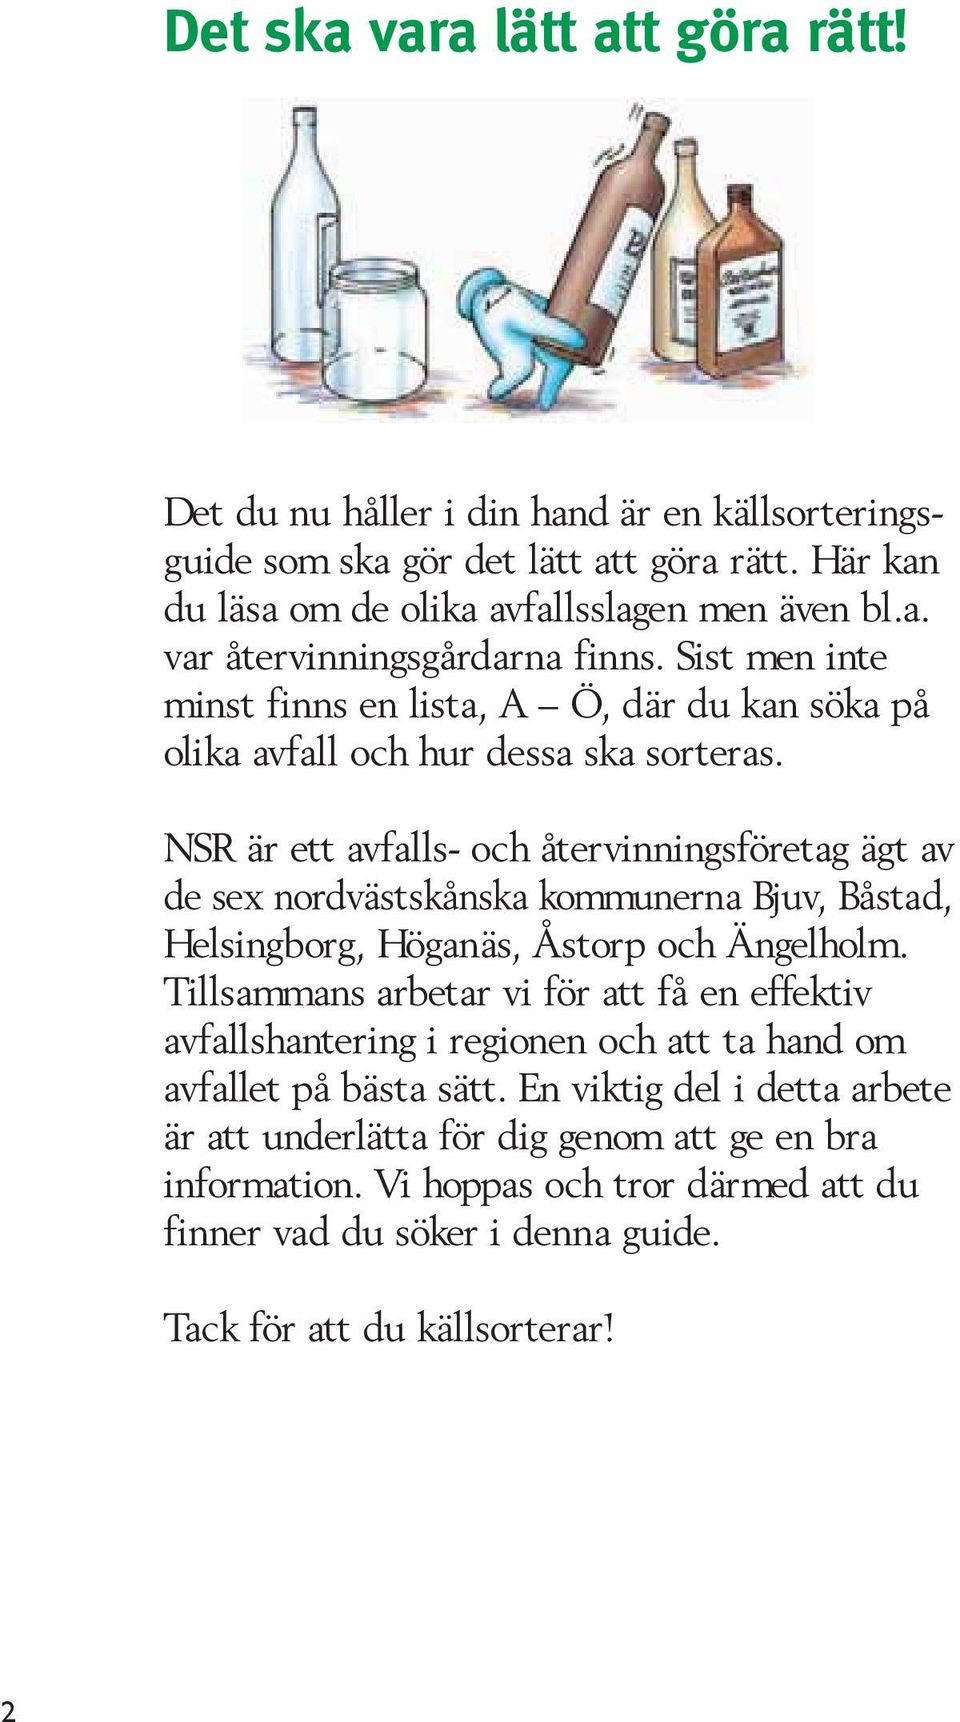 NSR är ett avfalls- och återvinningsföretag ägt av de sex nordvästskånska kommunerna Bjuv, Båstad, Helsingborg, Höganäs, Åstorp och Ängelholm.